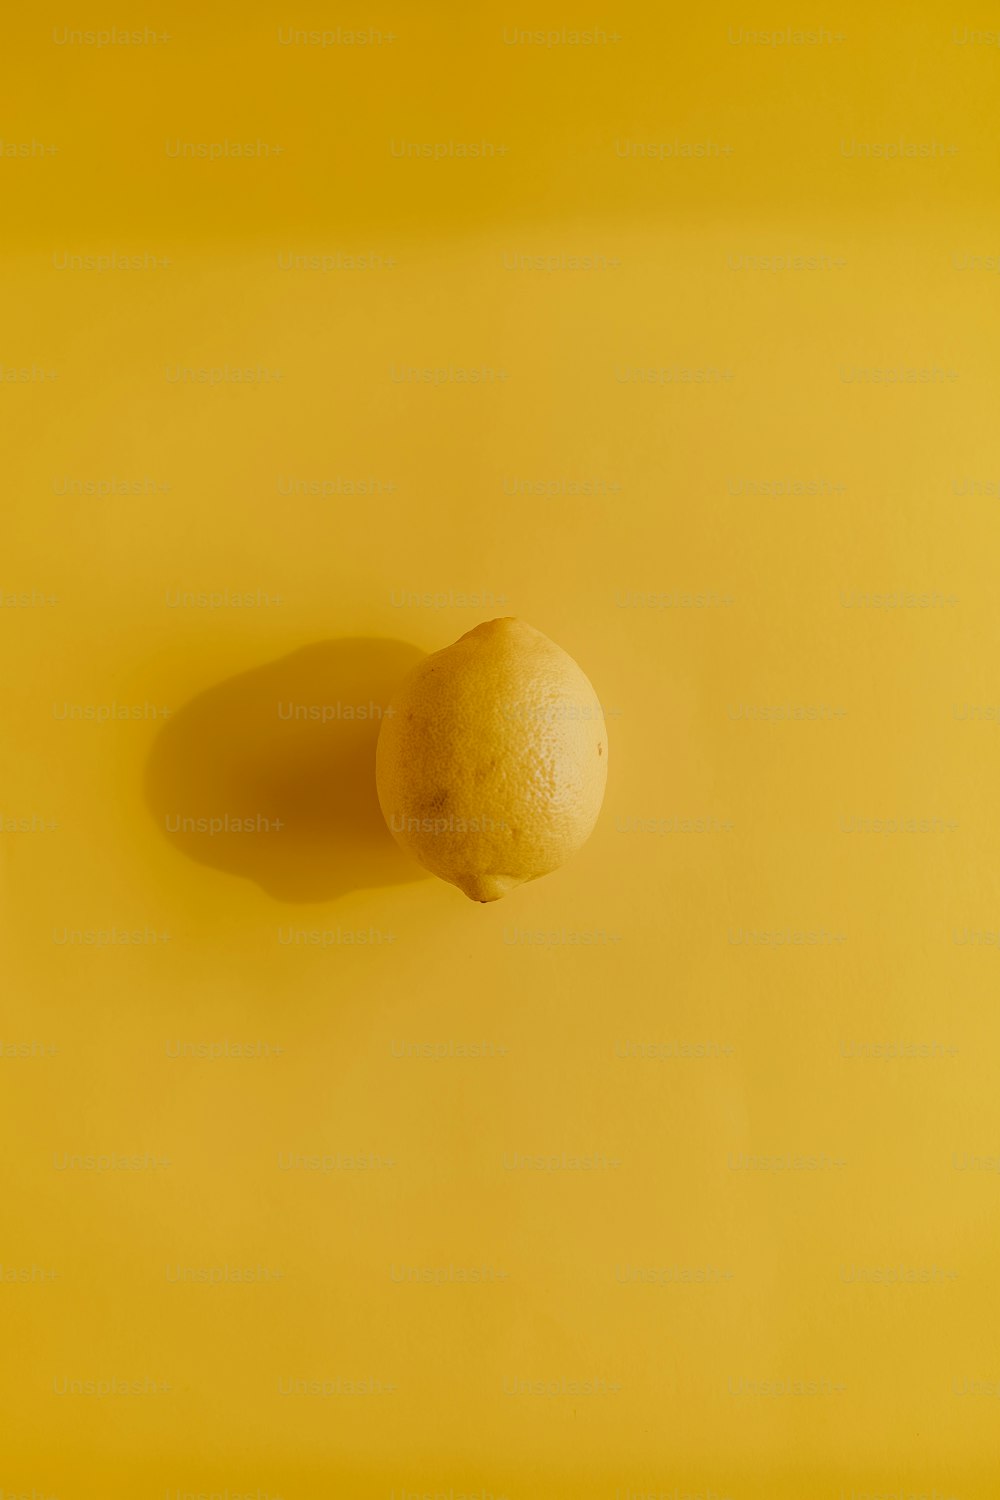 un citron posé sur une surface jaune